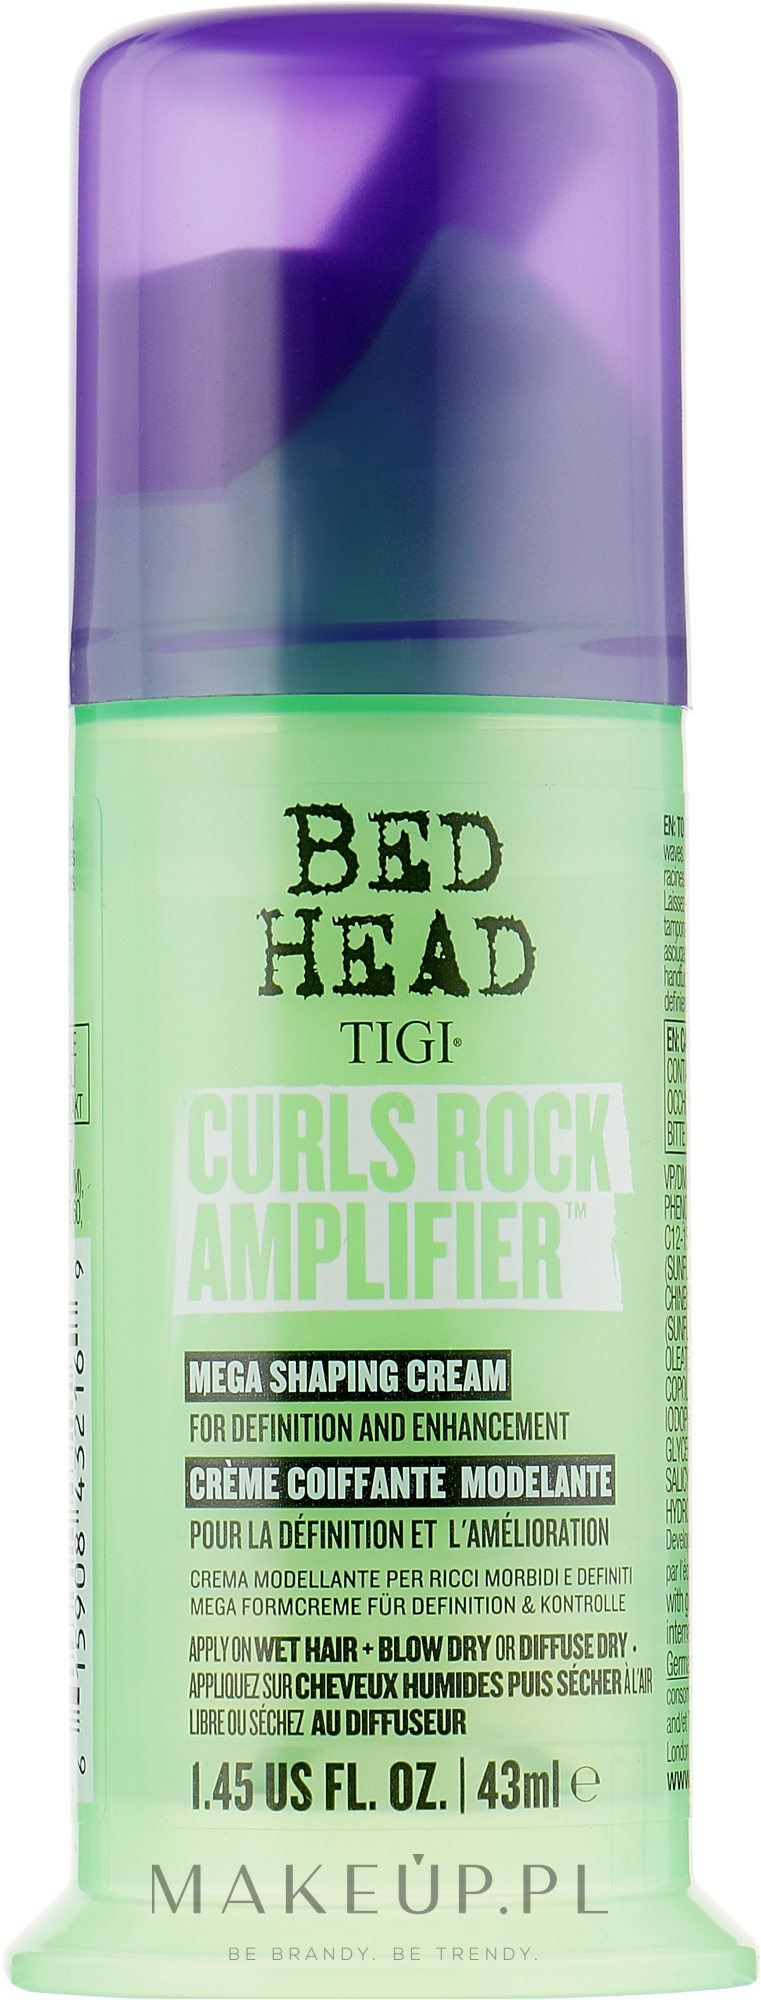 Krem do włosów kręconych - Tigi Bed Head Curls Rock Amplifier Curly Hair Cream — Zdjęcie 43 ml